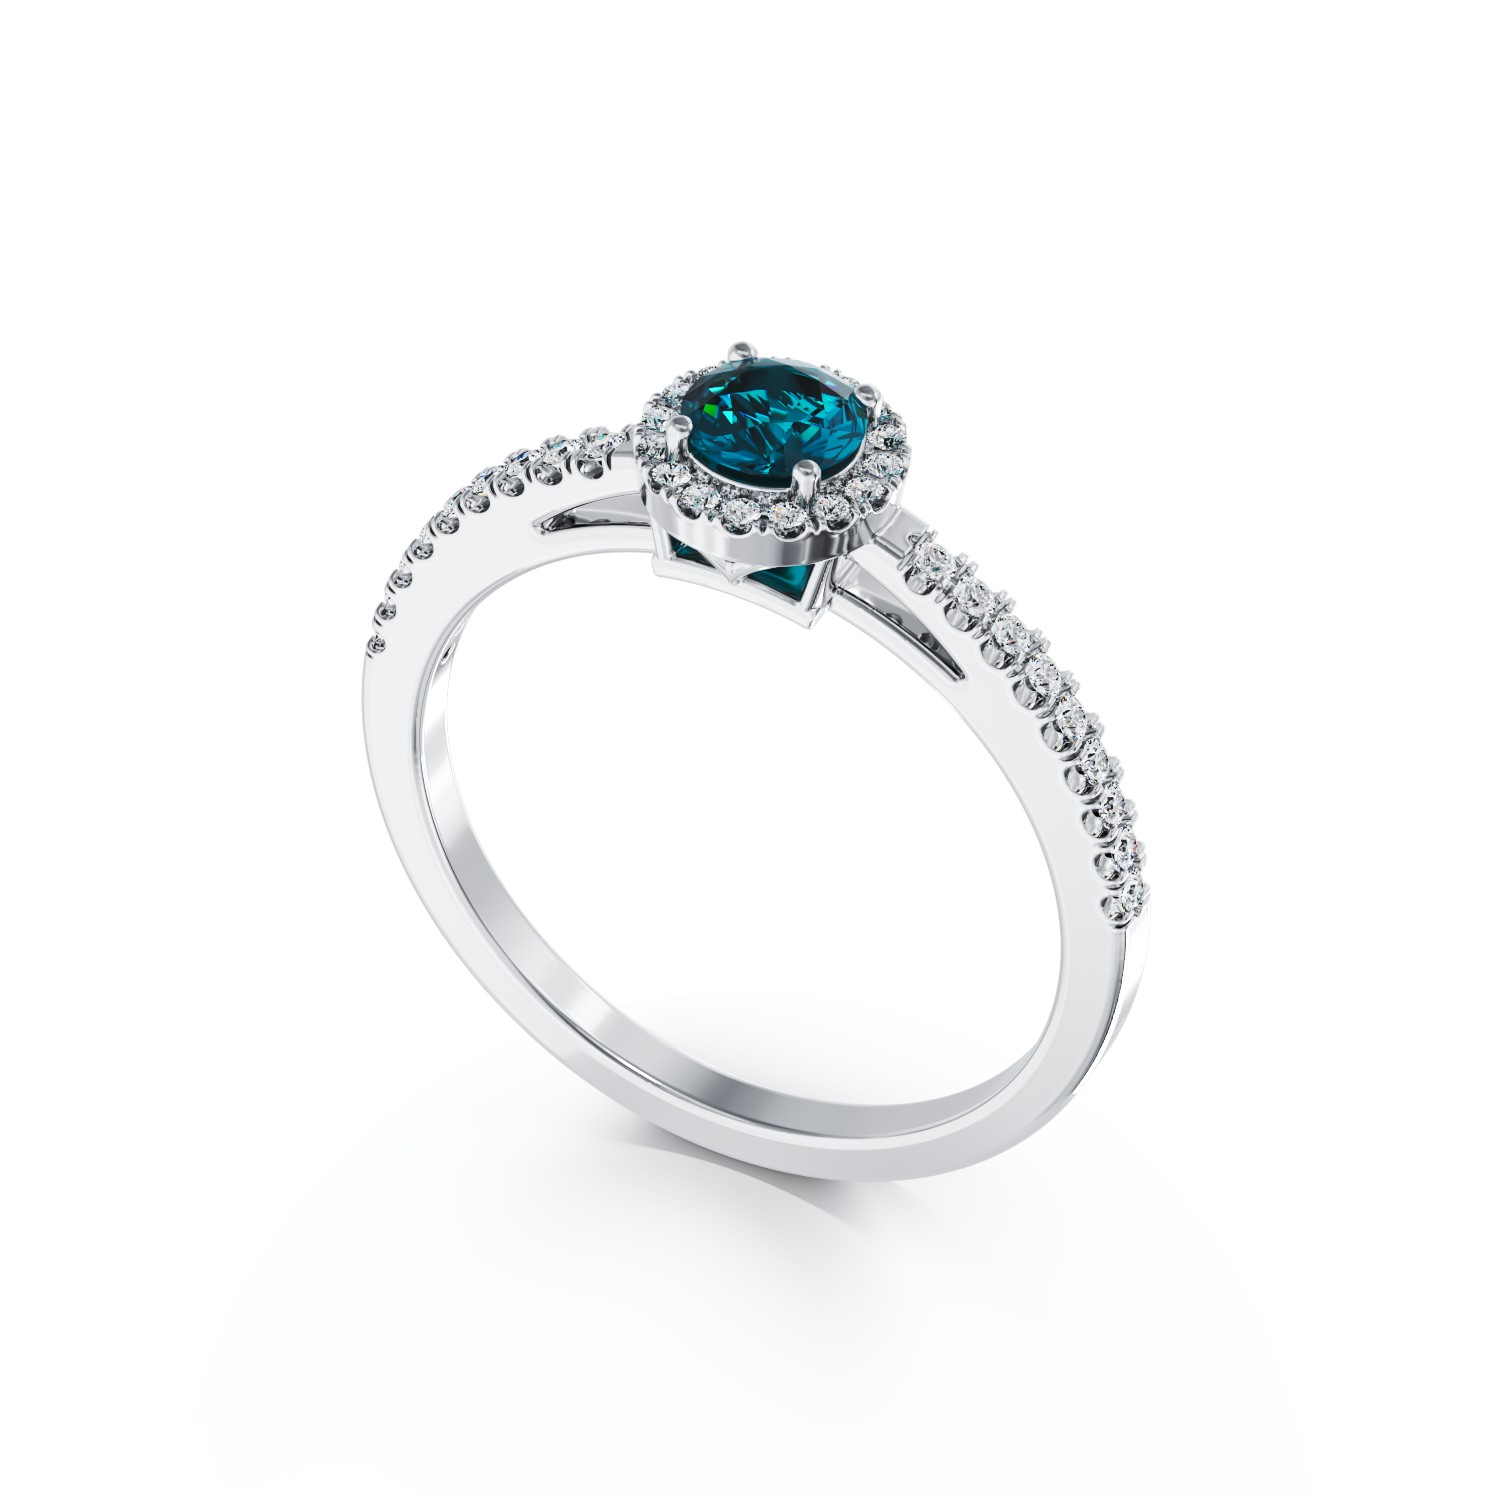 18K fehérarany eljegyzési gyűrű 0.3kt kék gyémánttal és 0.2kt tiszta gyémántokkal